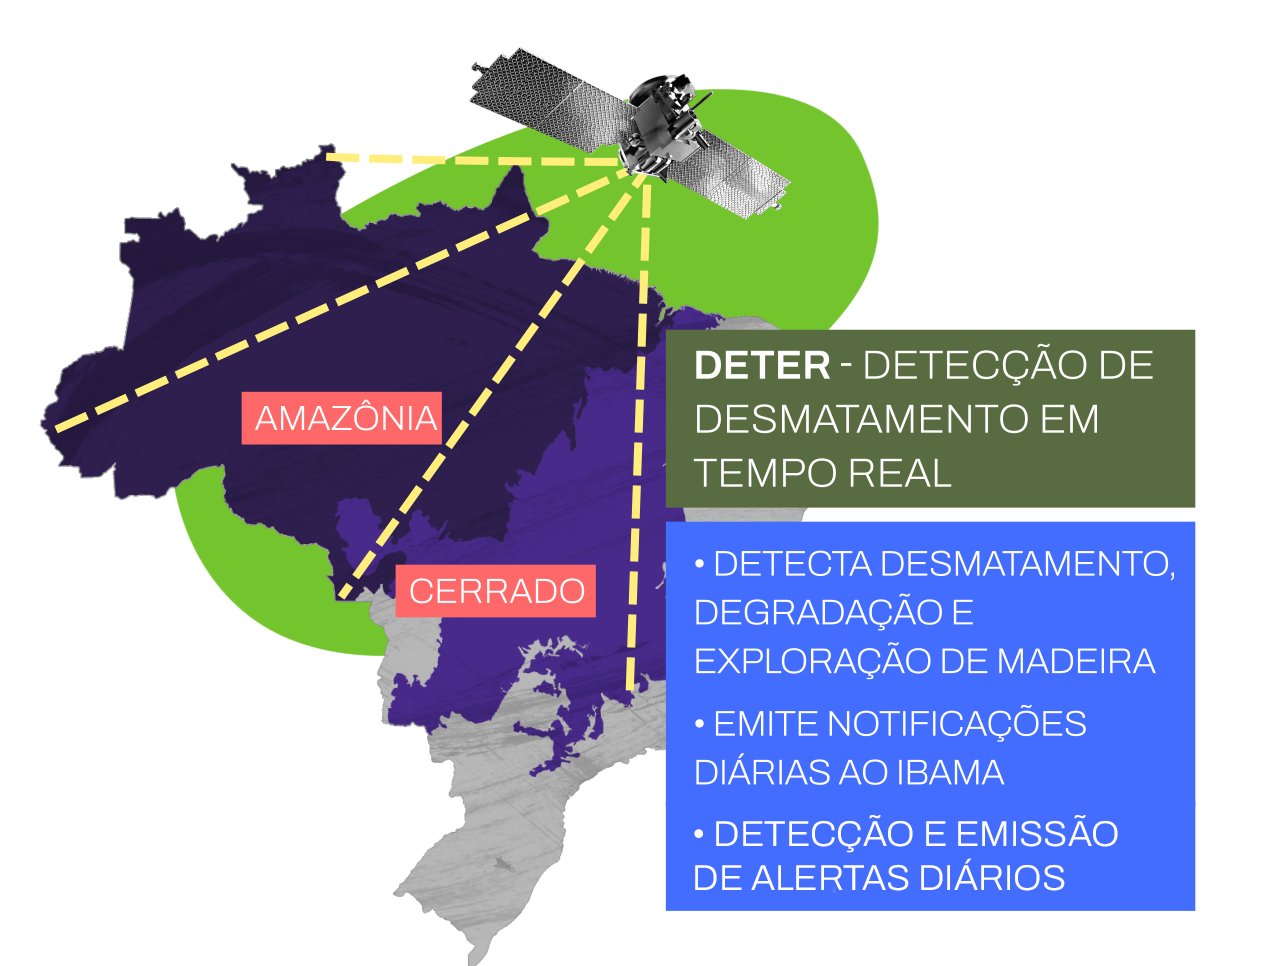 Sistema desenvolvido que emite alertas de incidências de desmatamento na Amazônia